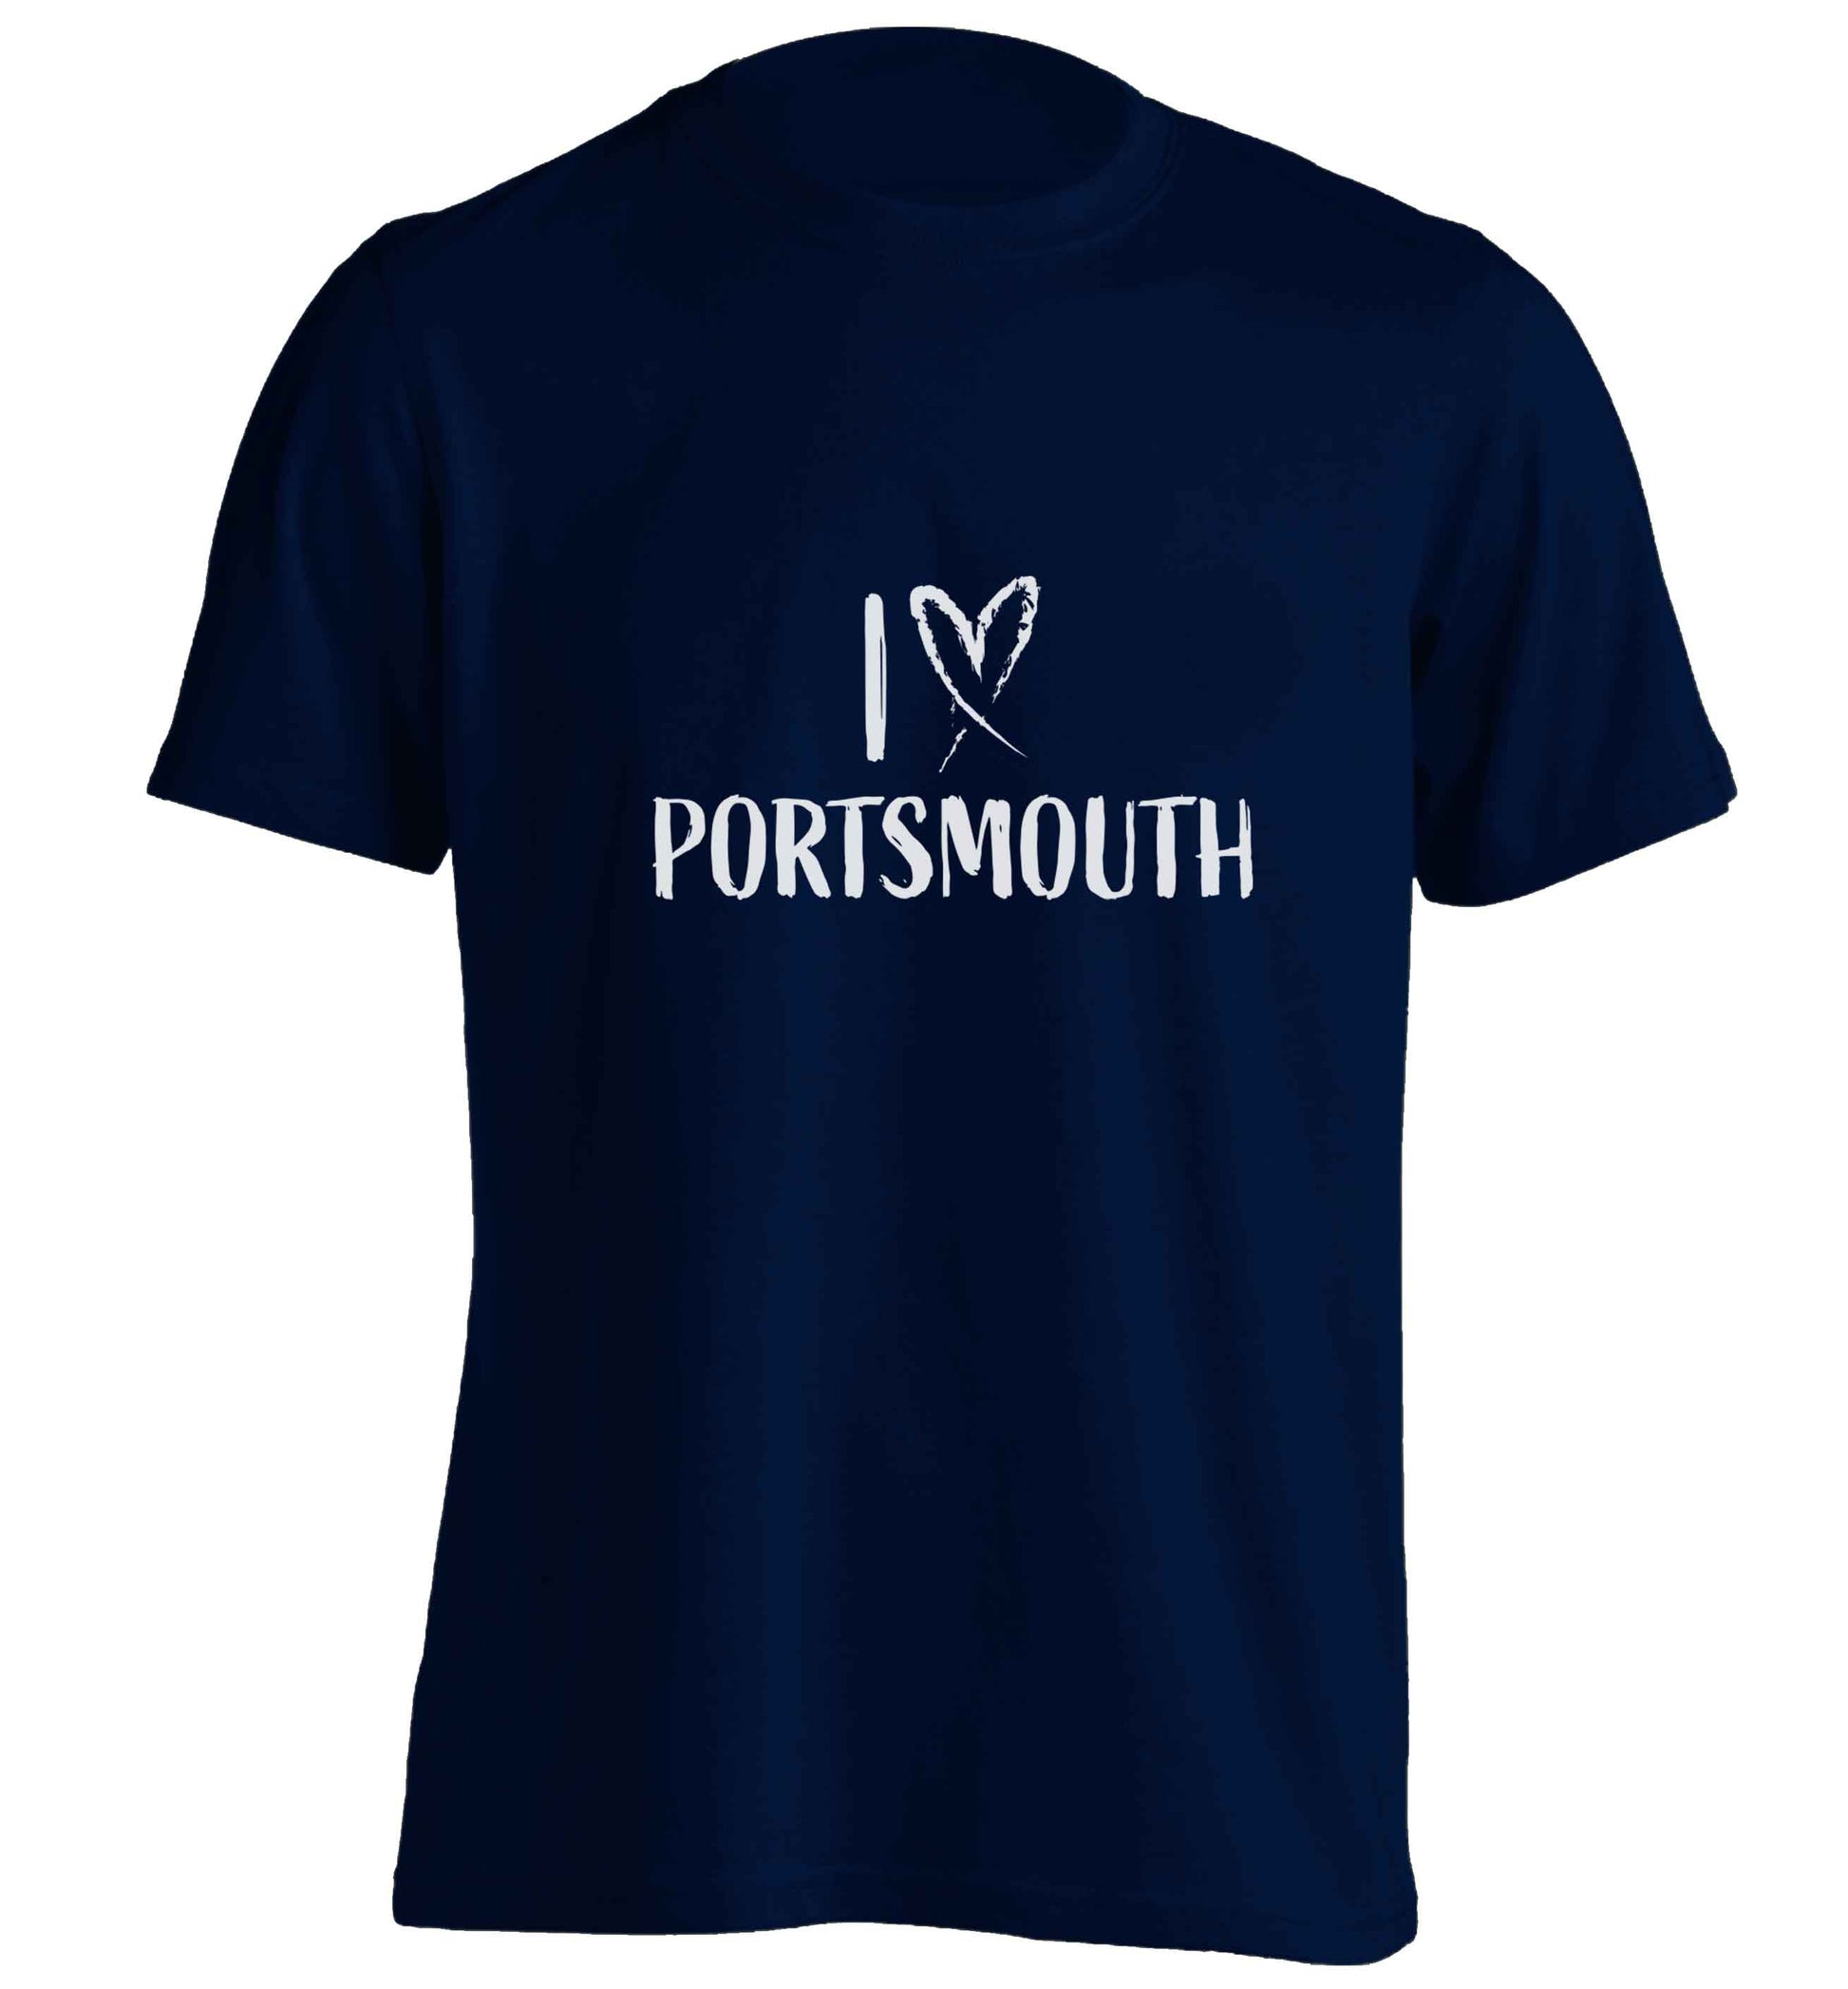 I love Portsmouth adults unisex navy Tshirt 2XL